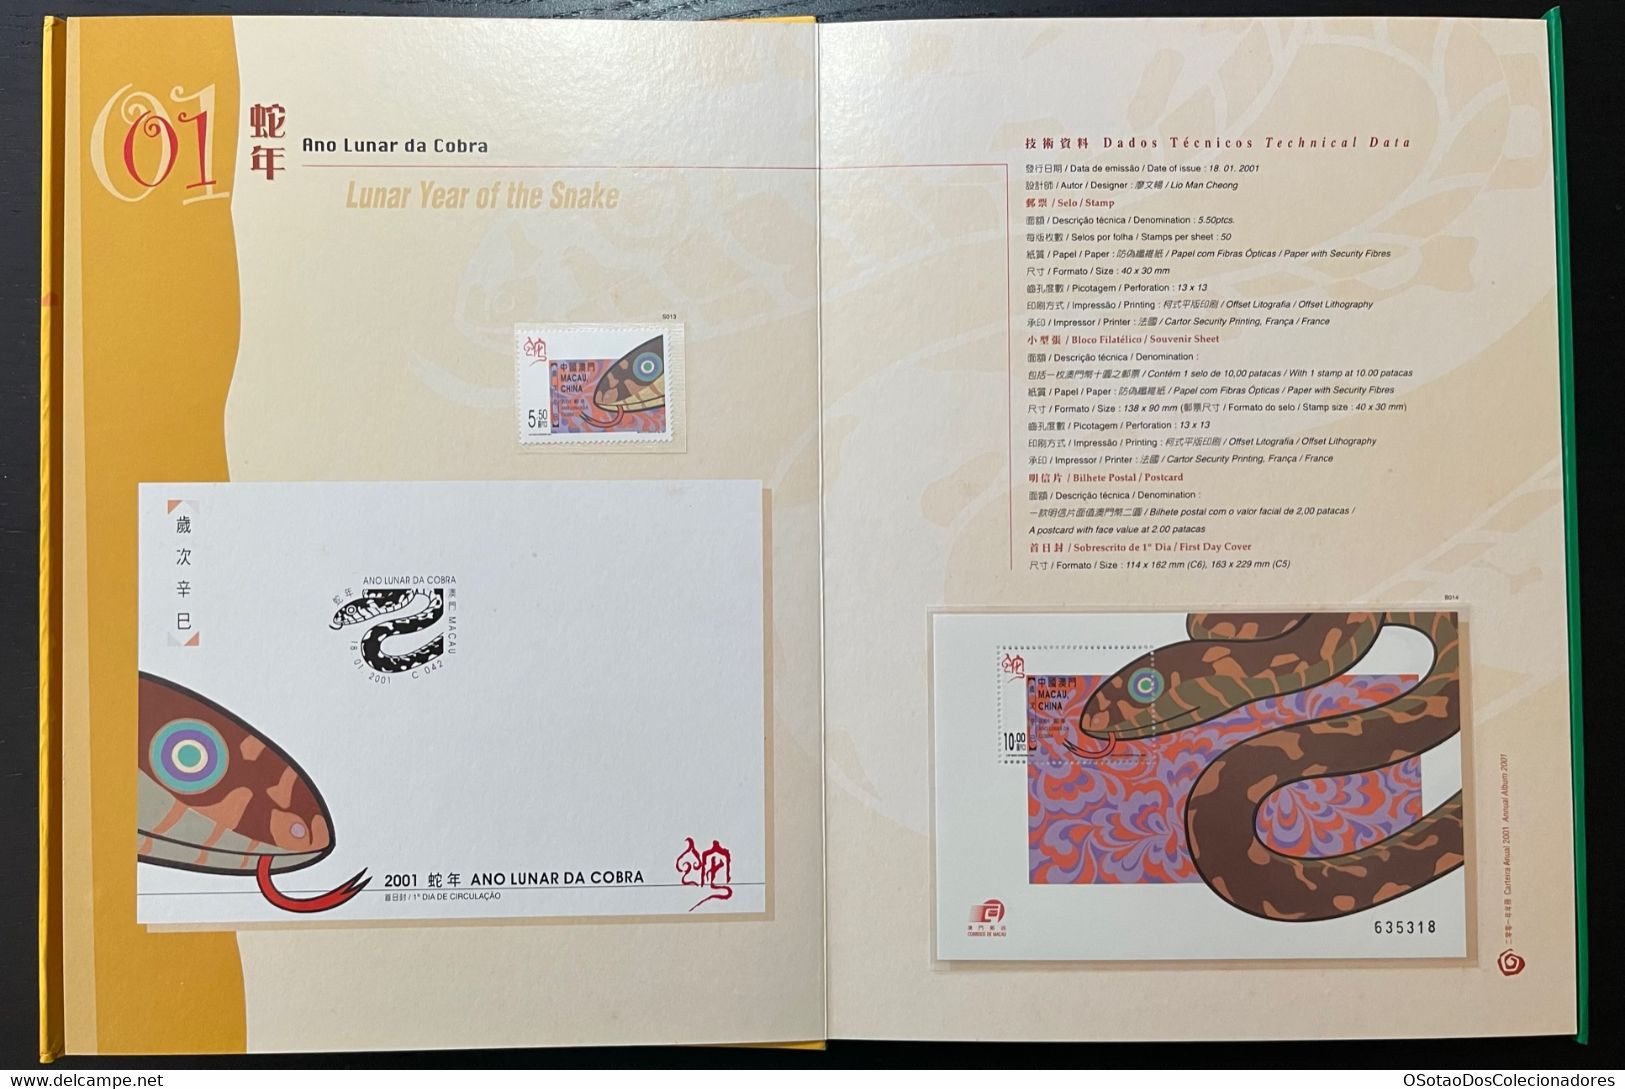 Macau Macao - China Chine - Annual Album 2001 - Macao's Stamps - Livro Anual De Selos De Macau 2001 - Carteira Jaarboek - Volledig Jaar